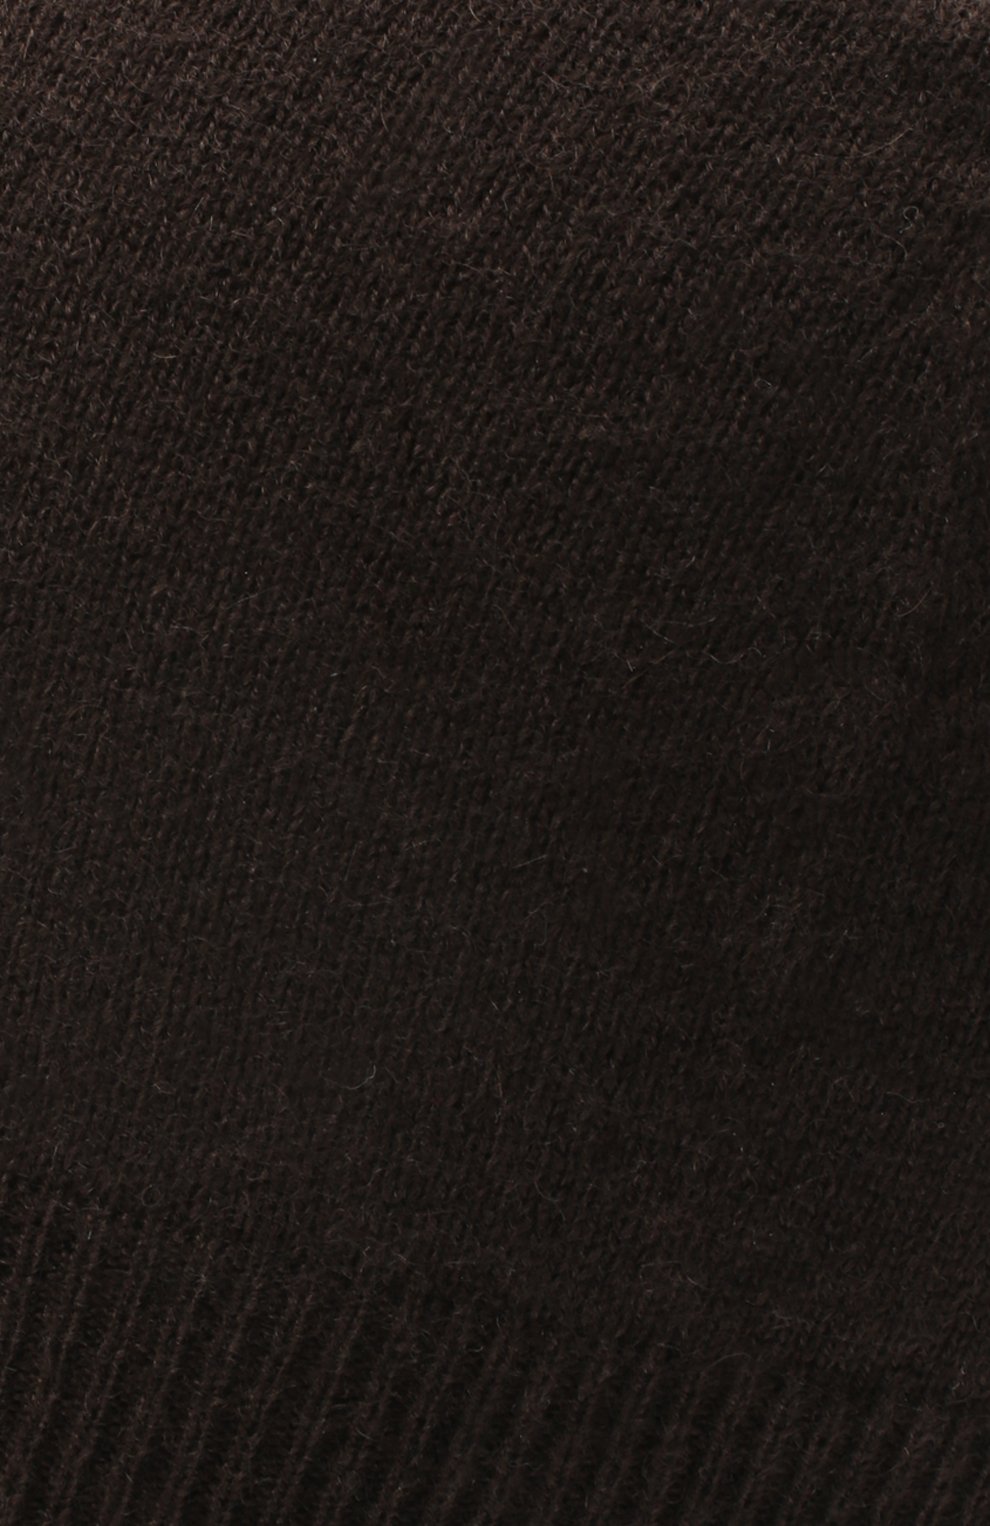 Женская кашемировая шапка RALPH LAUREN коричневого цвета, арт. 290840293 | Фото 3 (Материал: Текстиль, Кашемир, Шерсть)